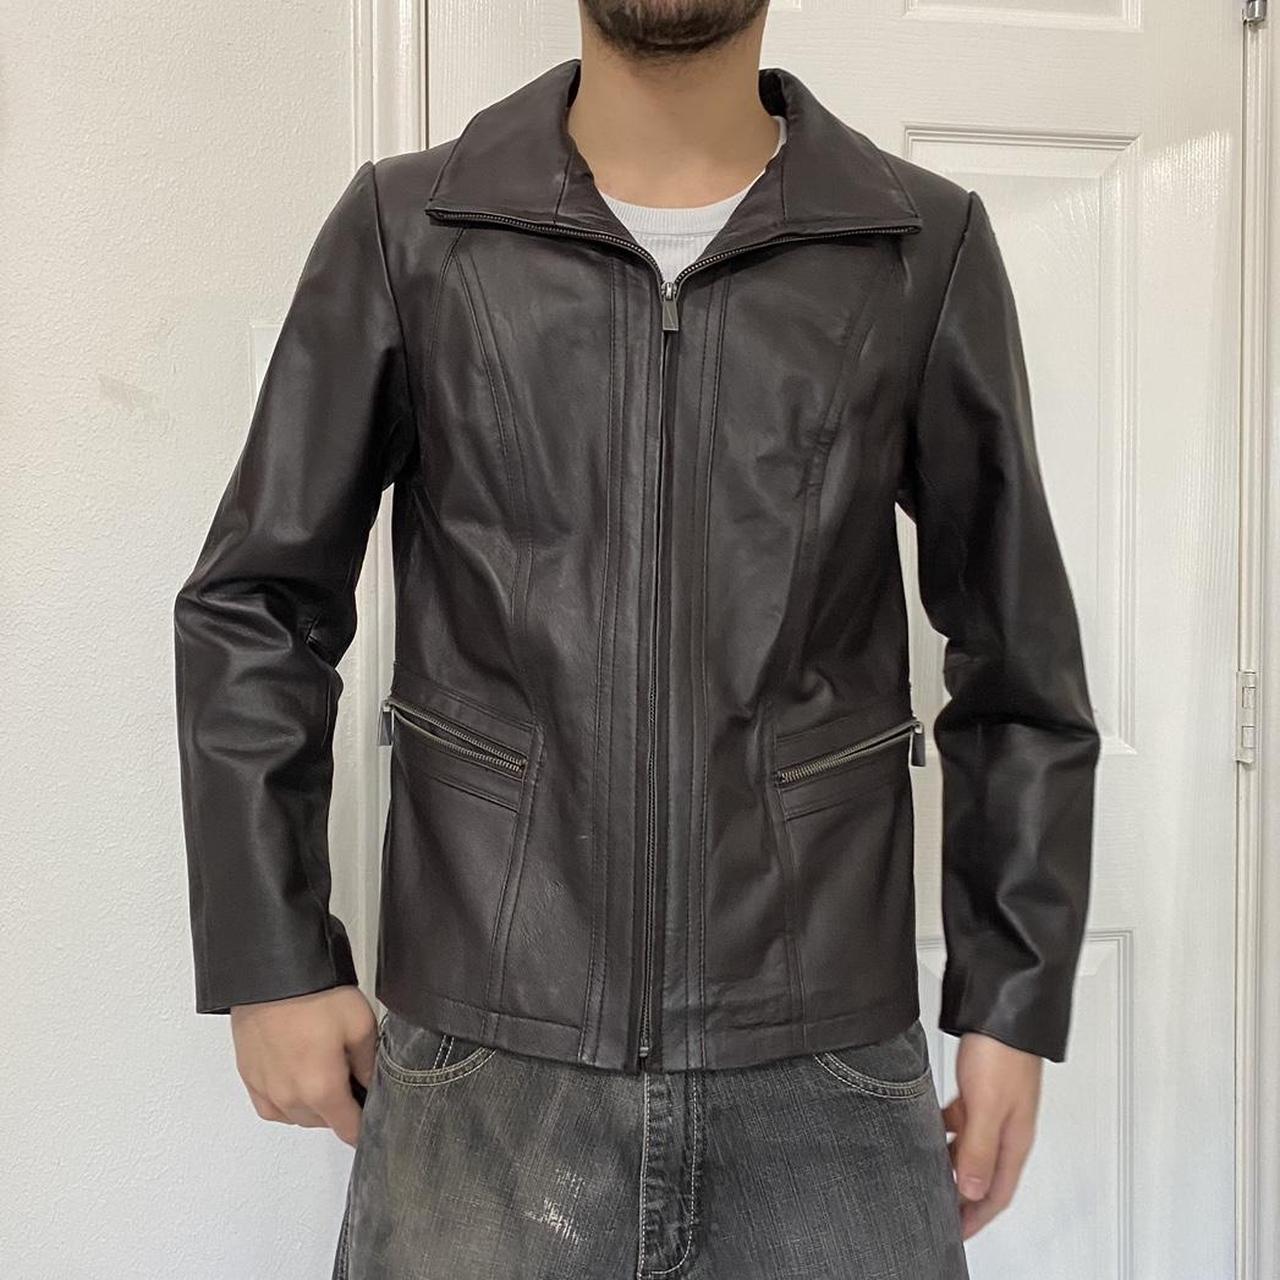 vintage brown leather jacket, 90s fit large length:... - Depop